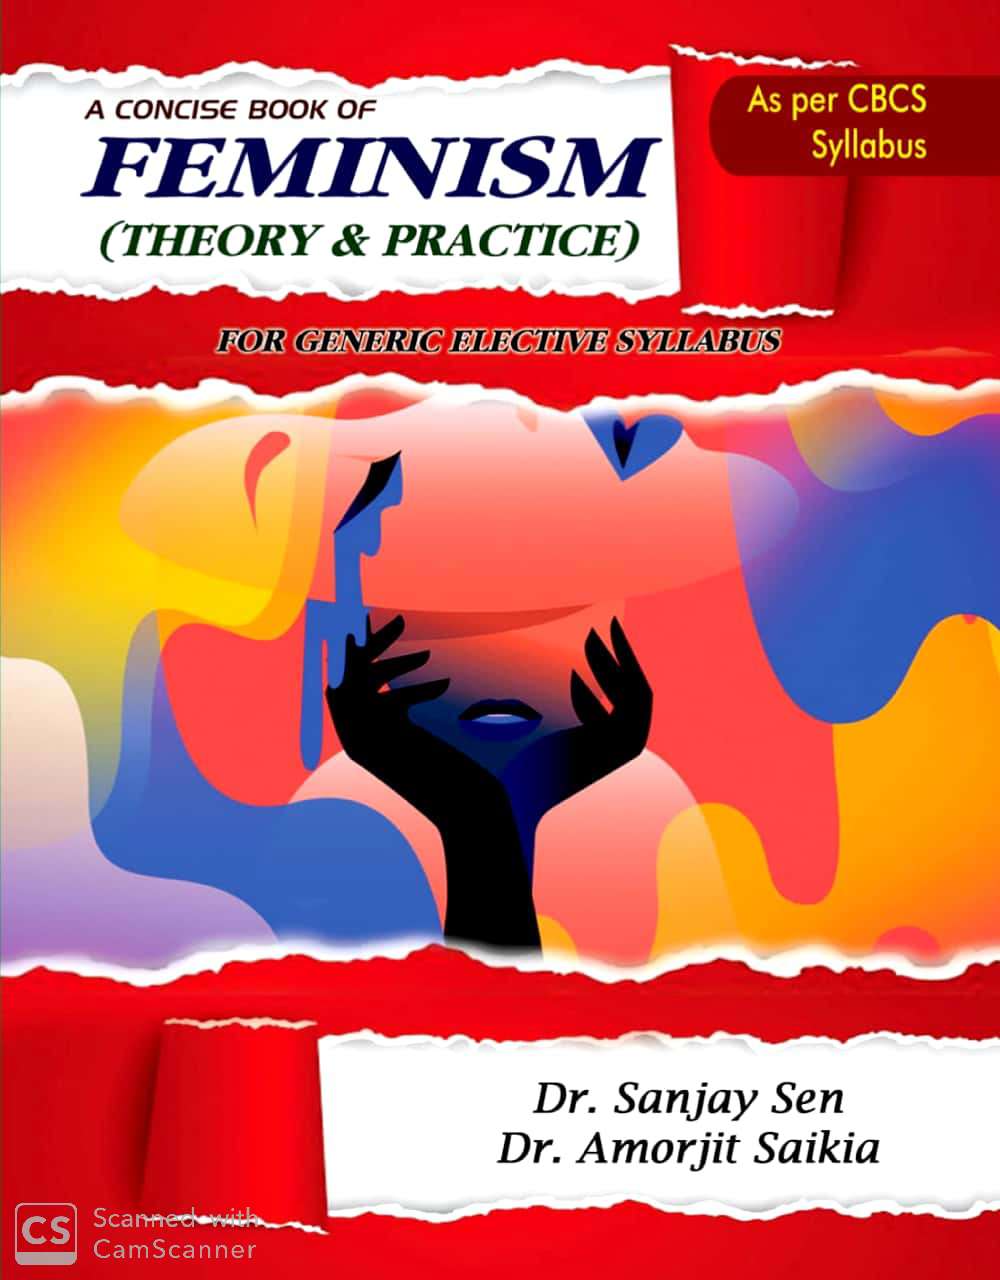 feminism-cover.jpg